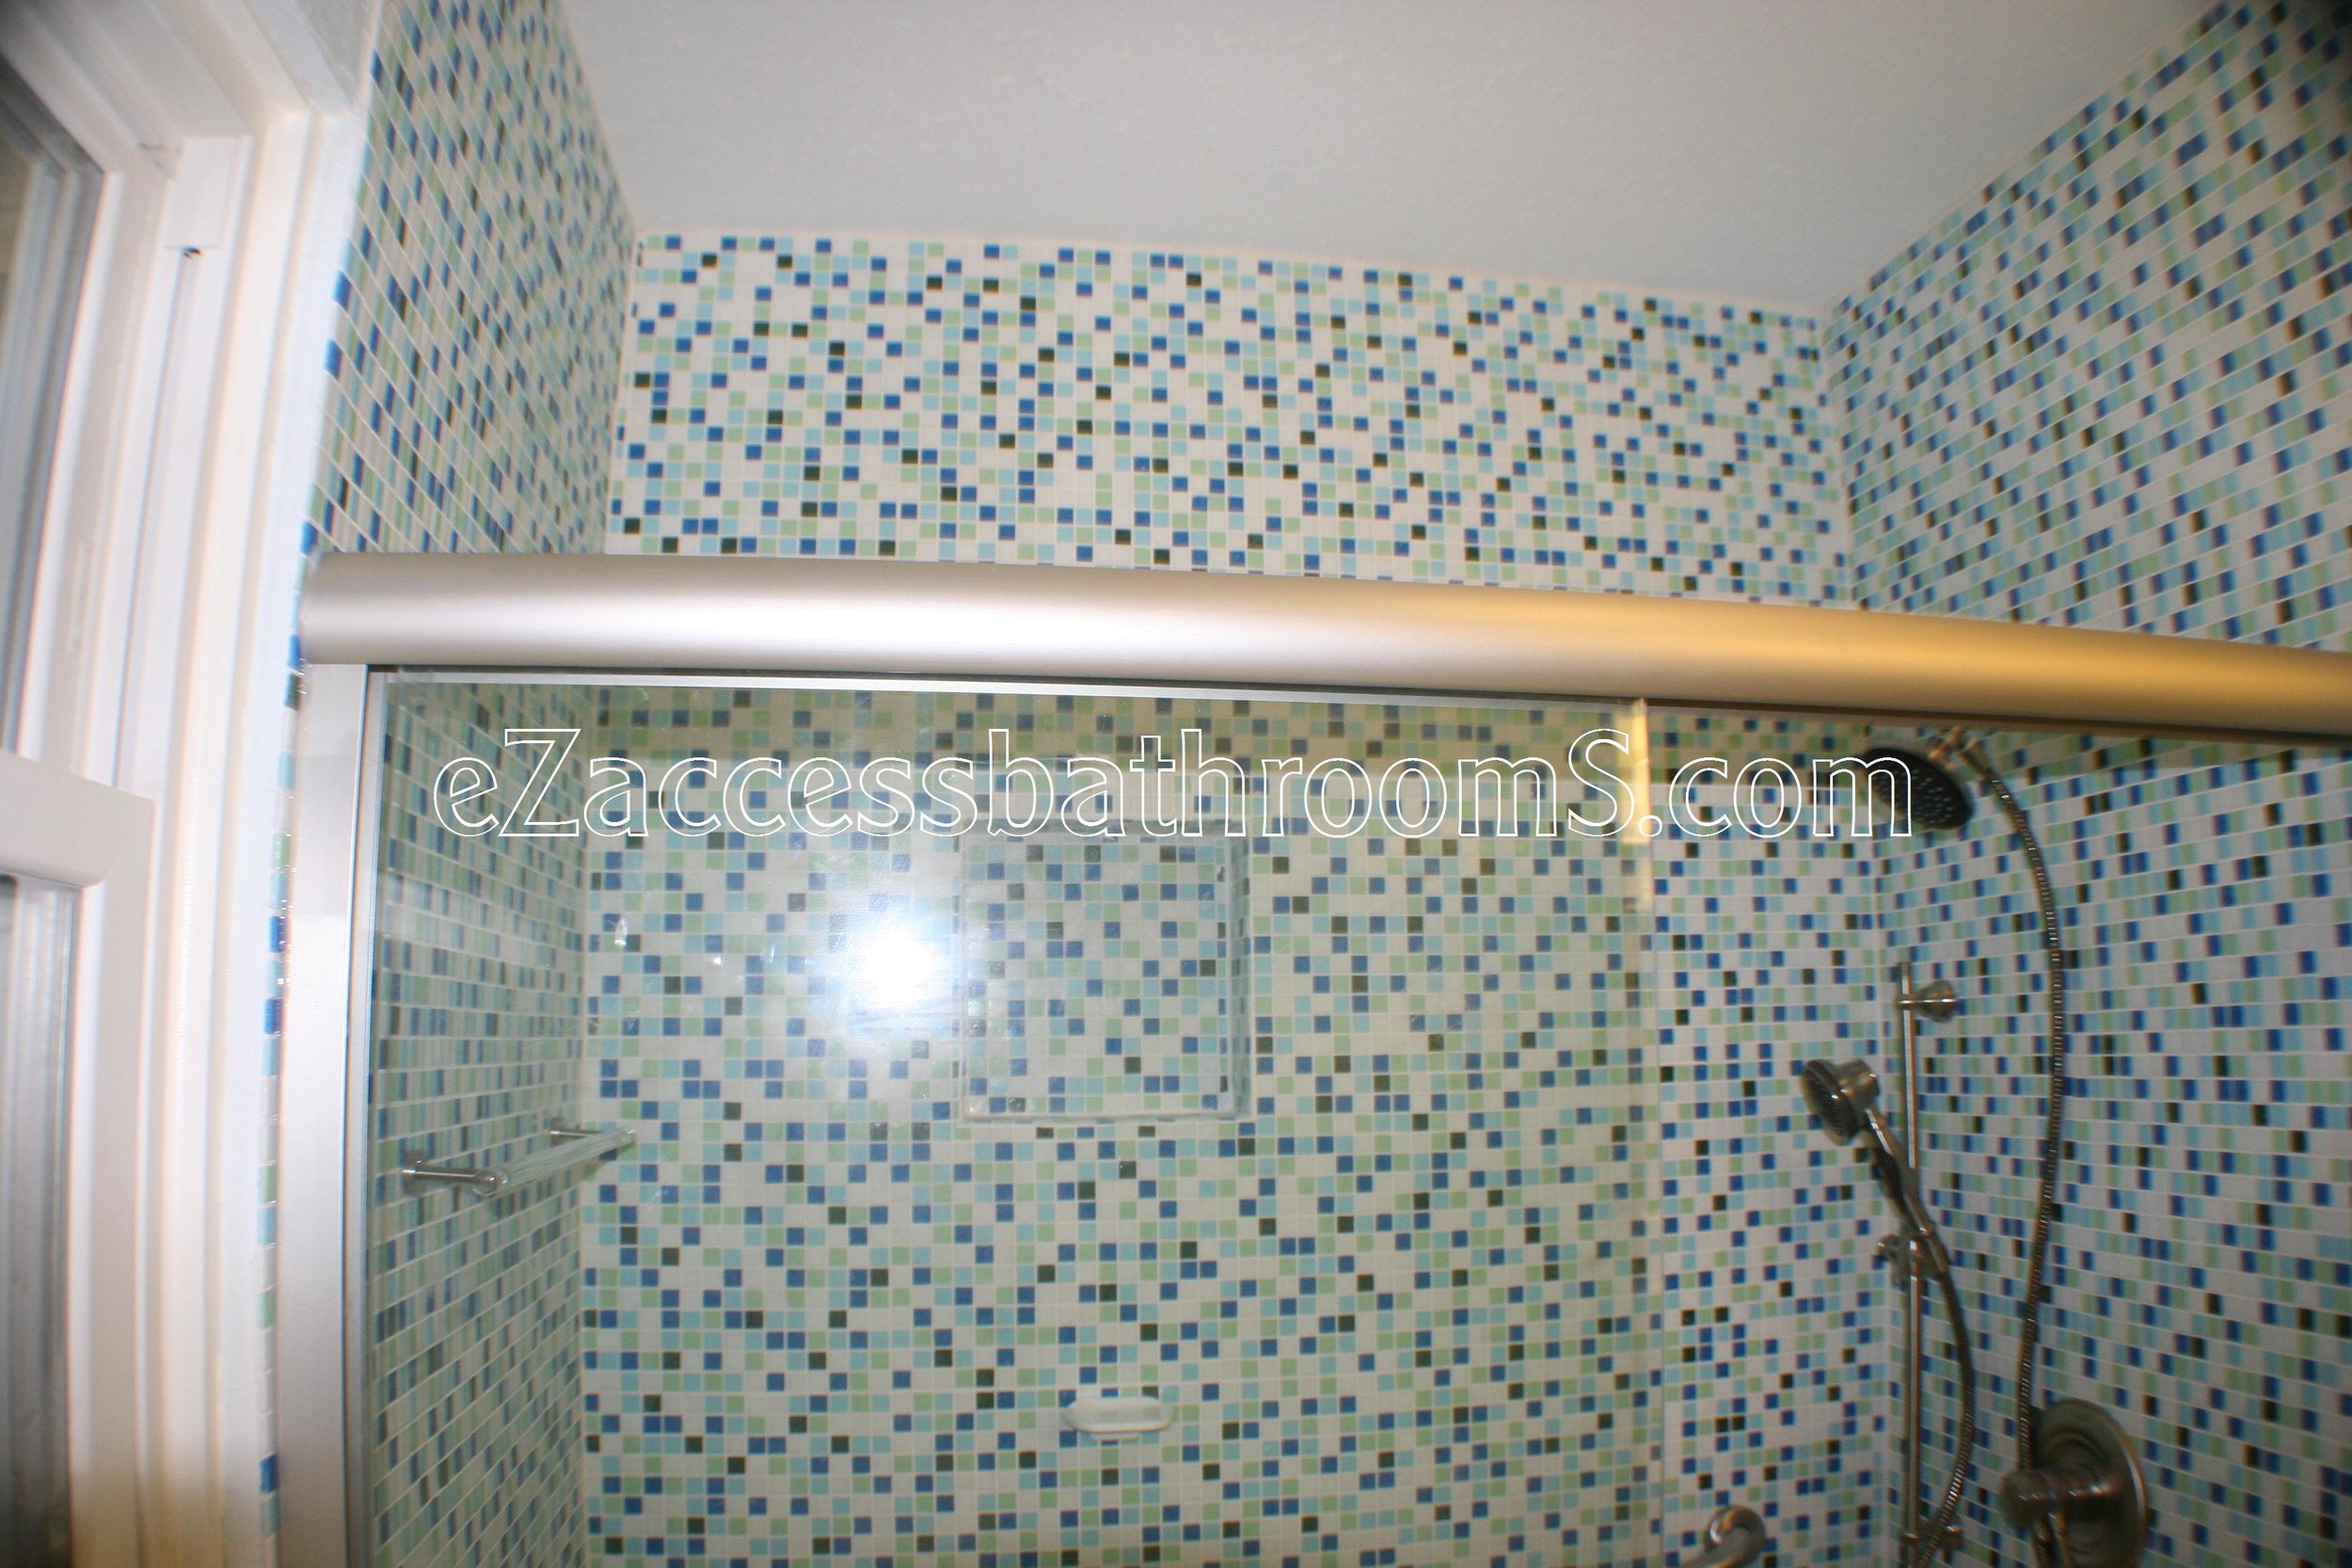 rollin shower ezaccessbathrooms.com 0018.JPG